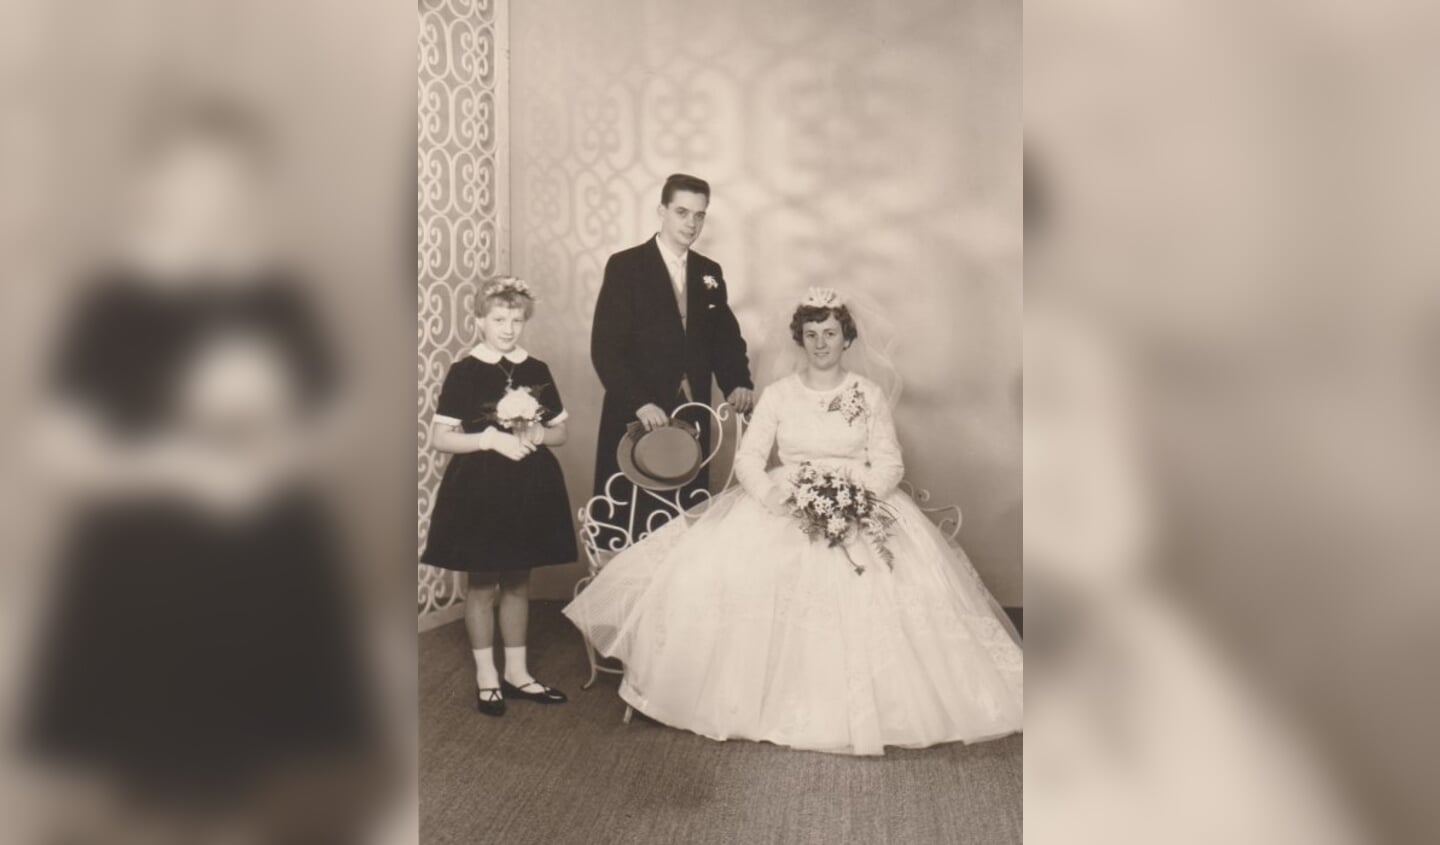 Het huwelijk zestig jaar geleden